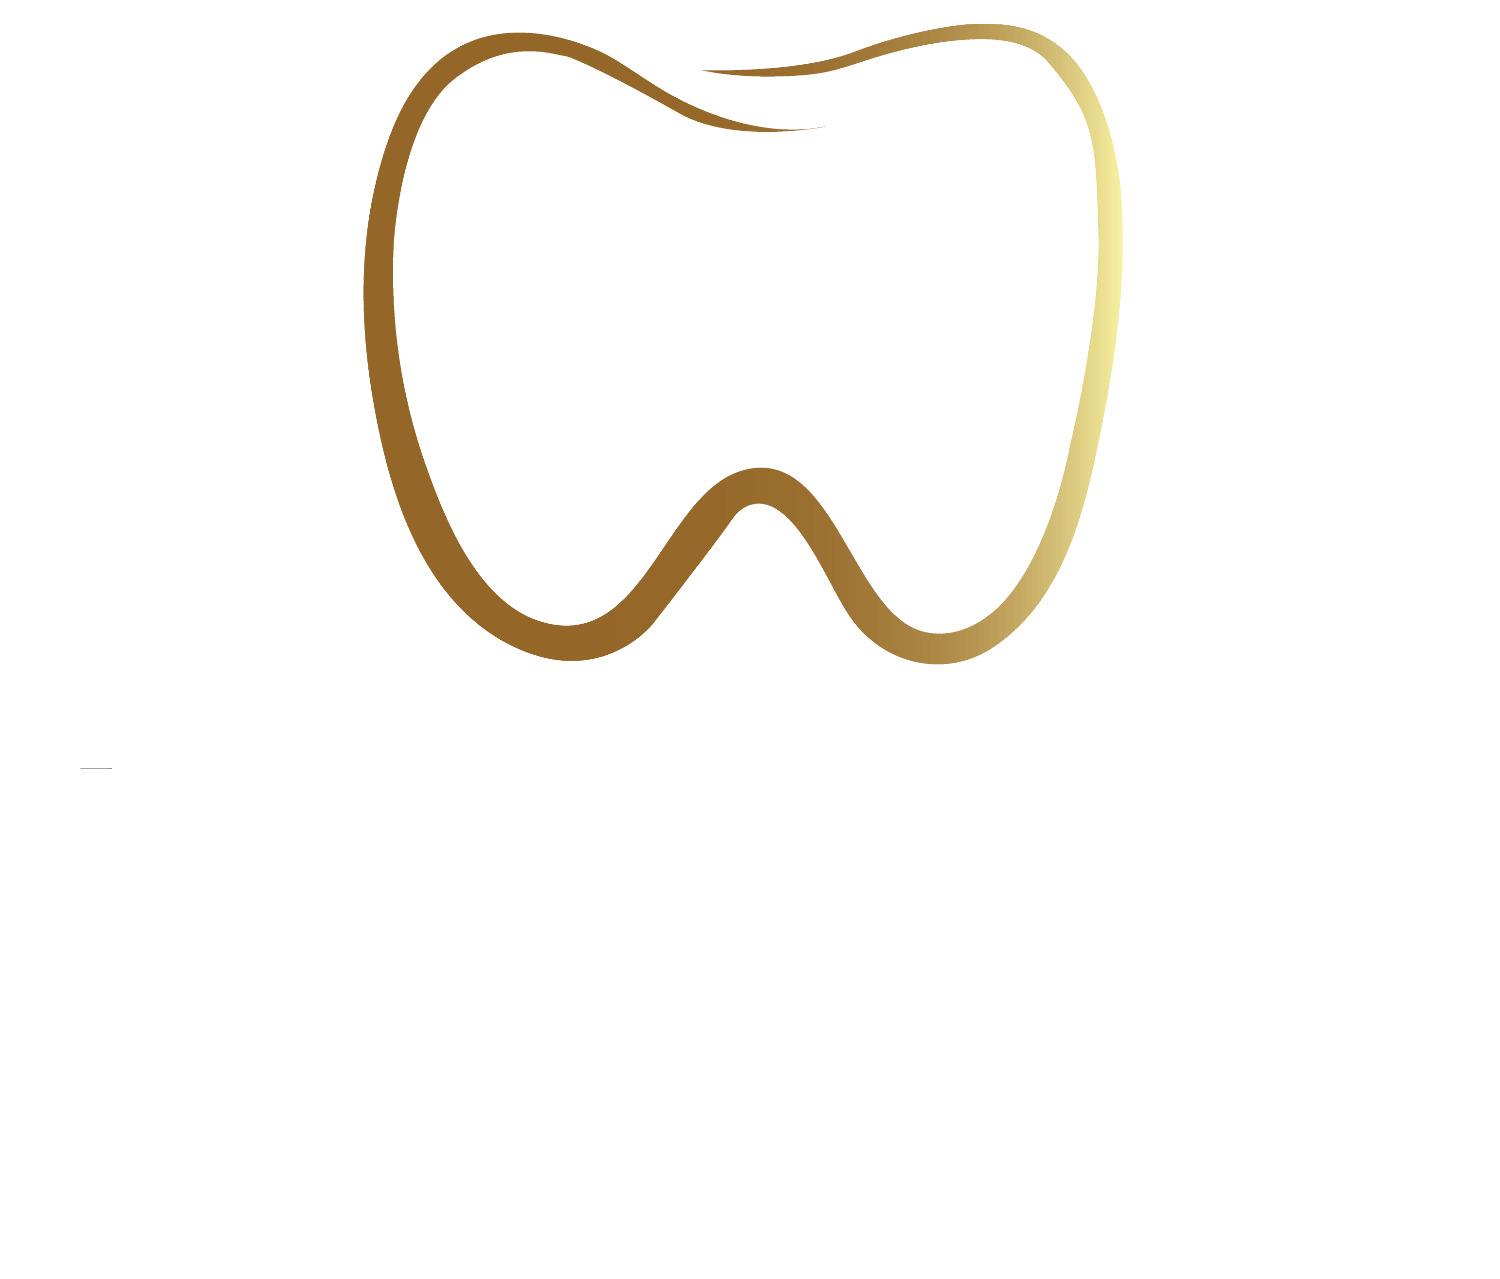 Dental Club Clinic 